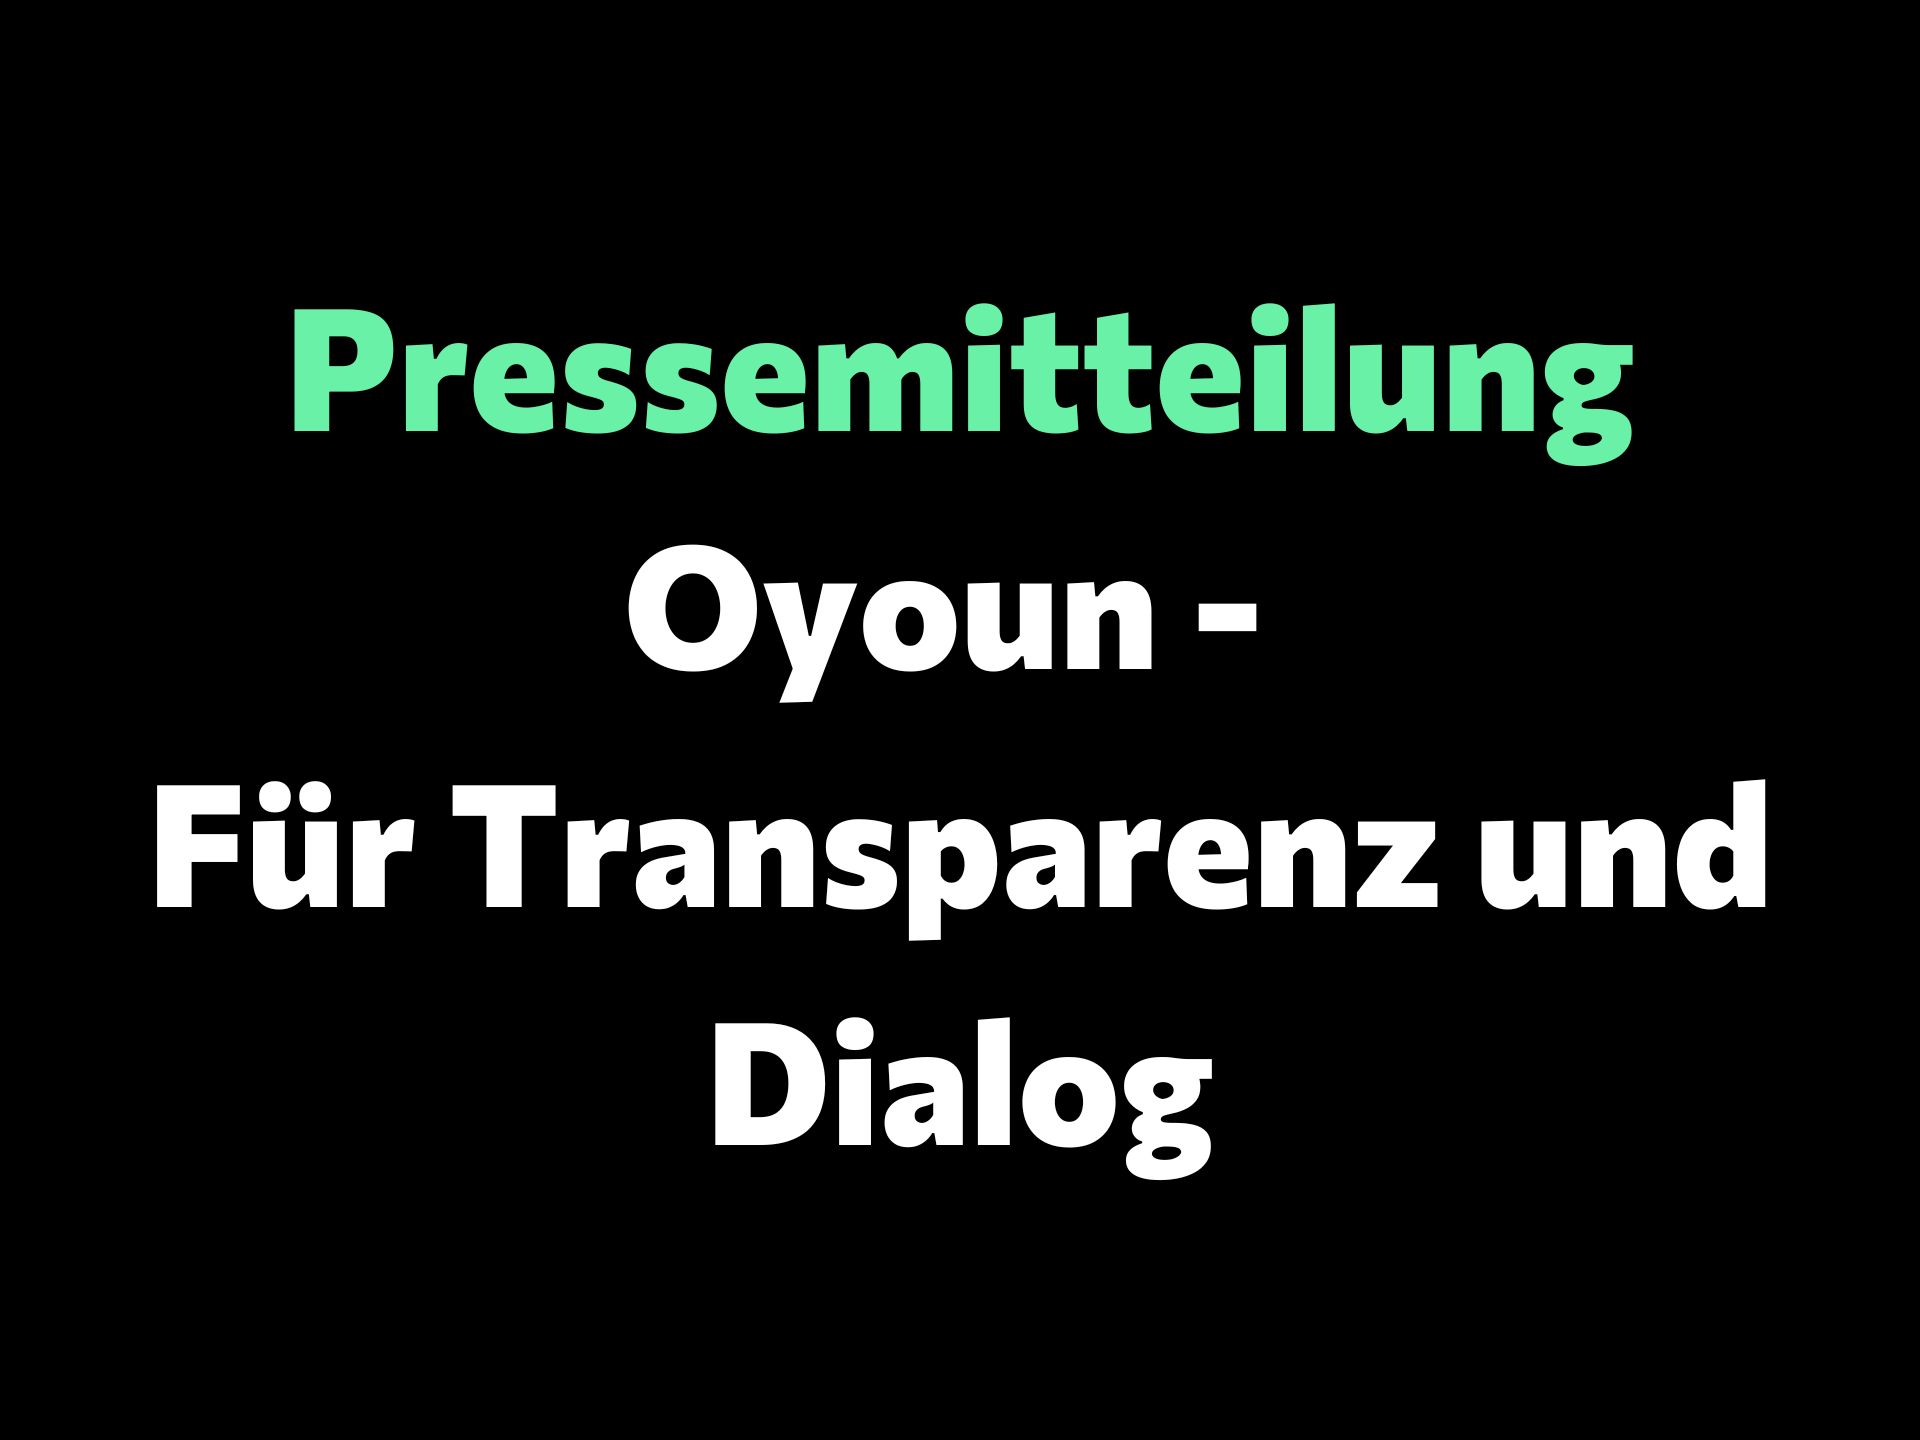 Oyoun – Pour la transparence et le dialogue